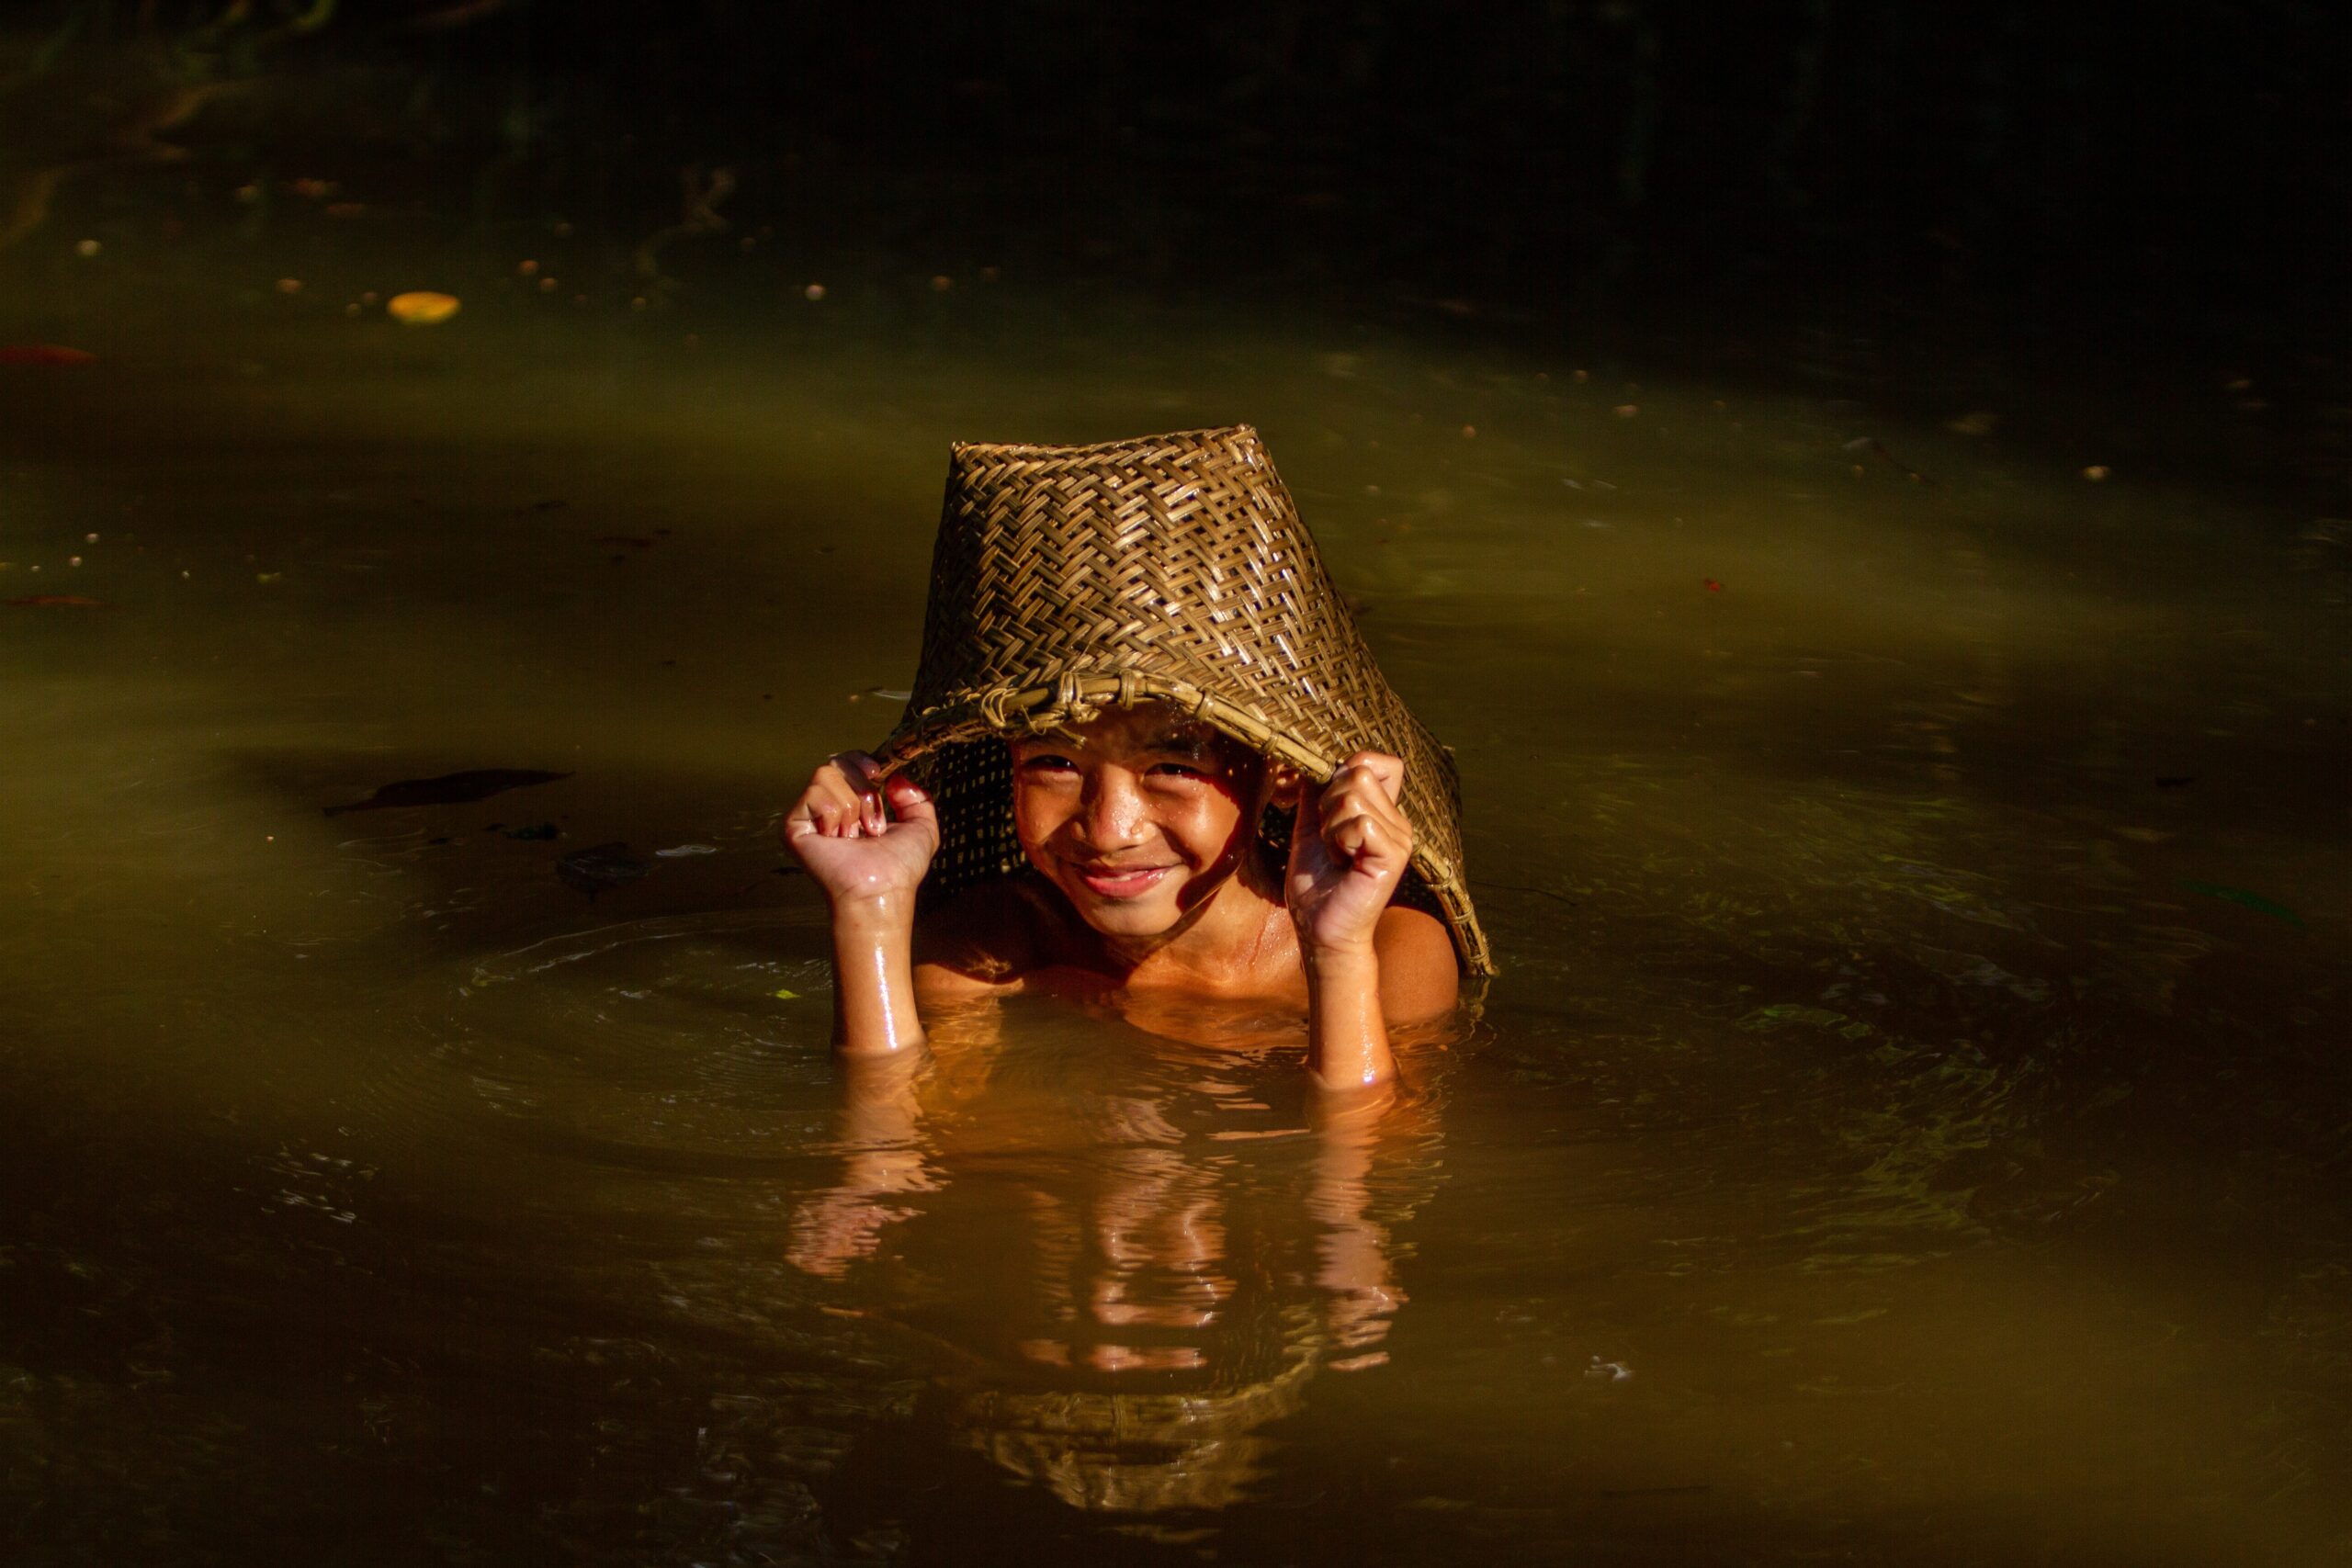 Enfant du peuple indonésien Dayak Kebhan jouant dans la rivière. 
Gagnants du Concours Photo “Solutions Innovatrices des Peuples Autochtones”
Nom de la photo : Dayak Kebhan Enfants. Auteur : Victor Fidelis Sentosa